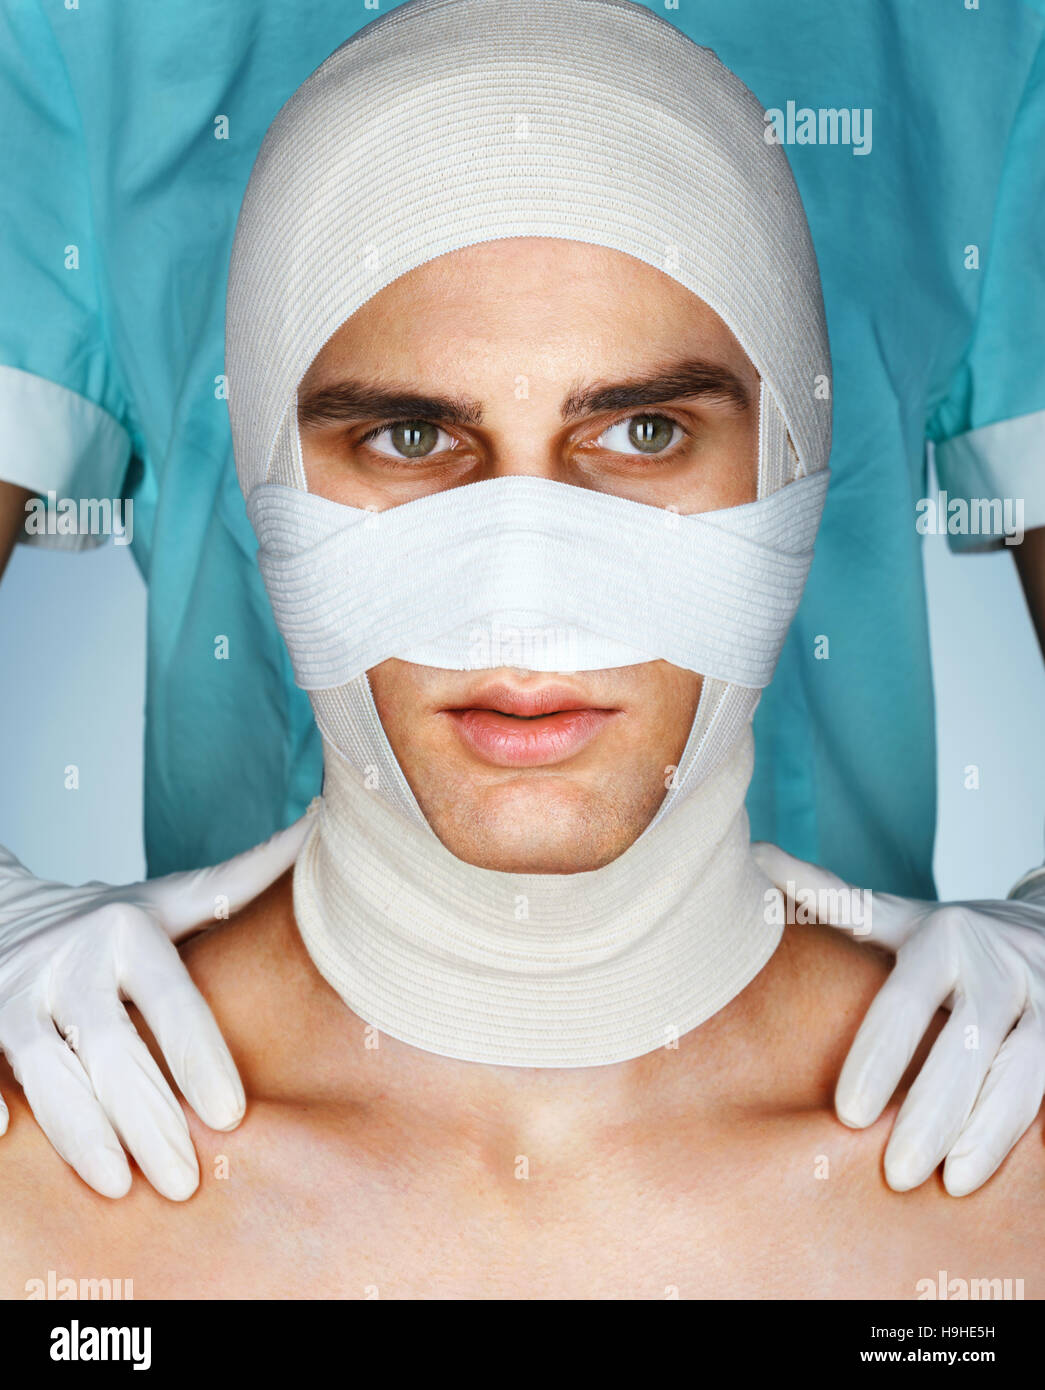 Gli uomini il suo volto nel cerotto medico dopo la bellezza di chirurgia plastica. Concetto di bellezza Foto Stock